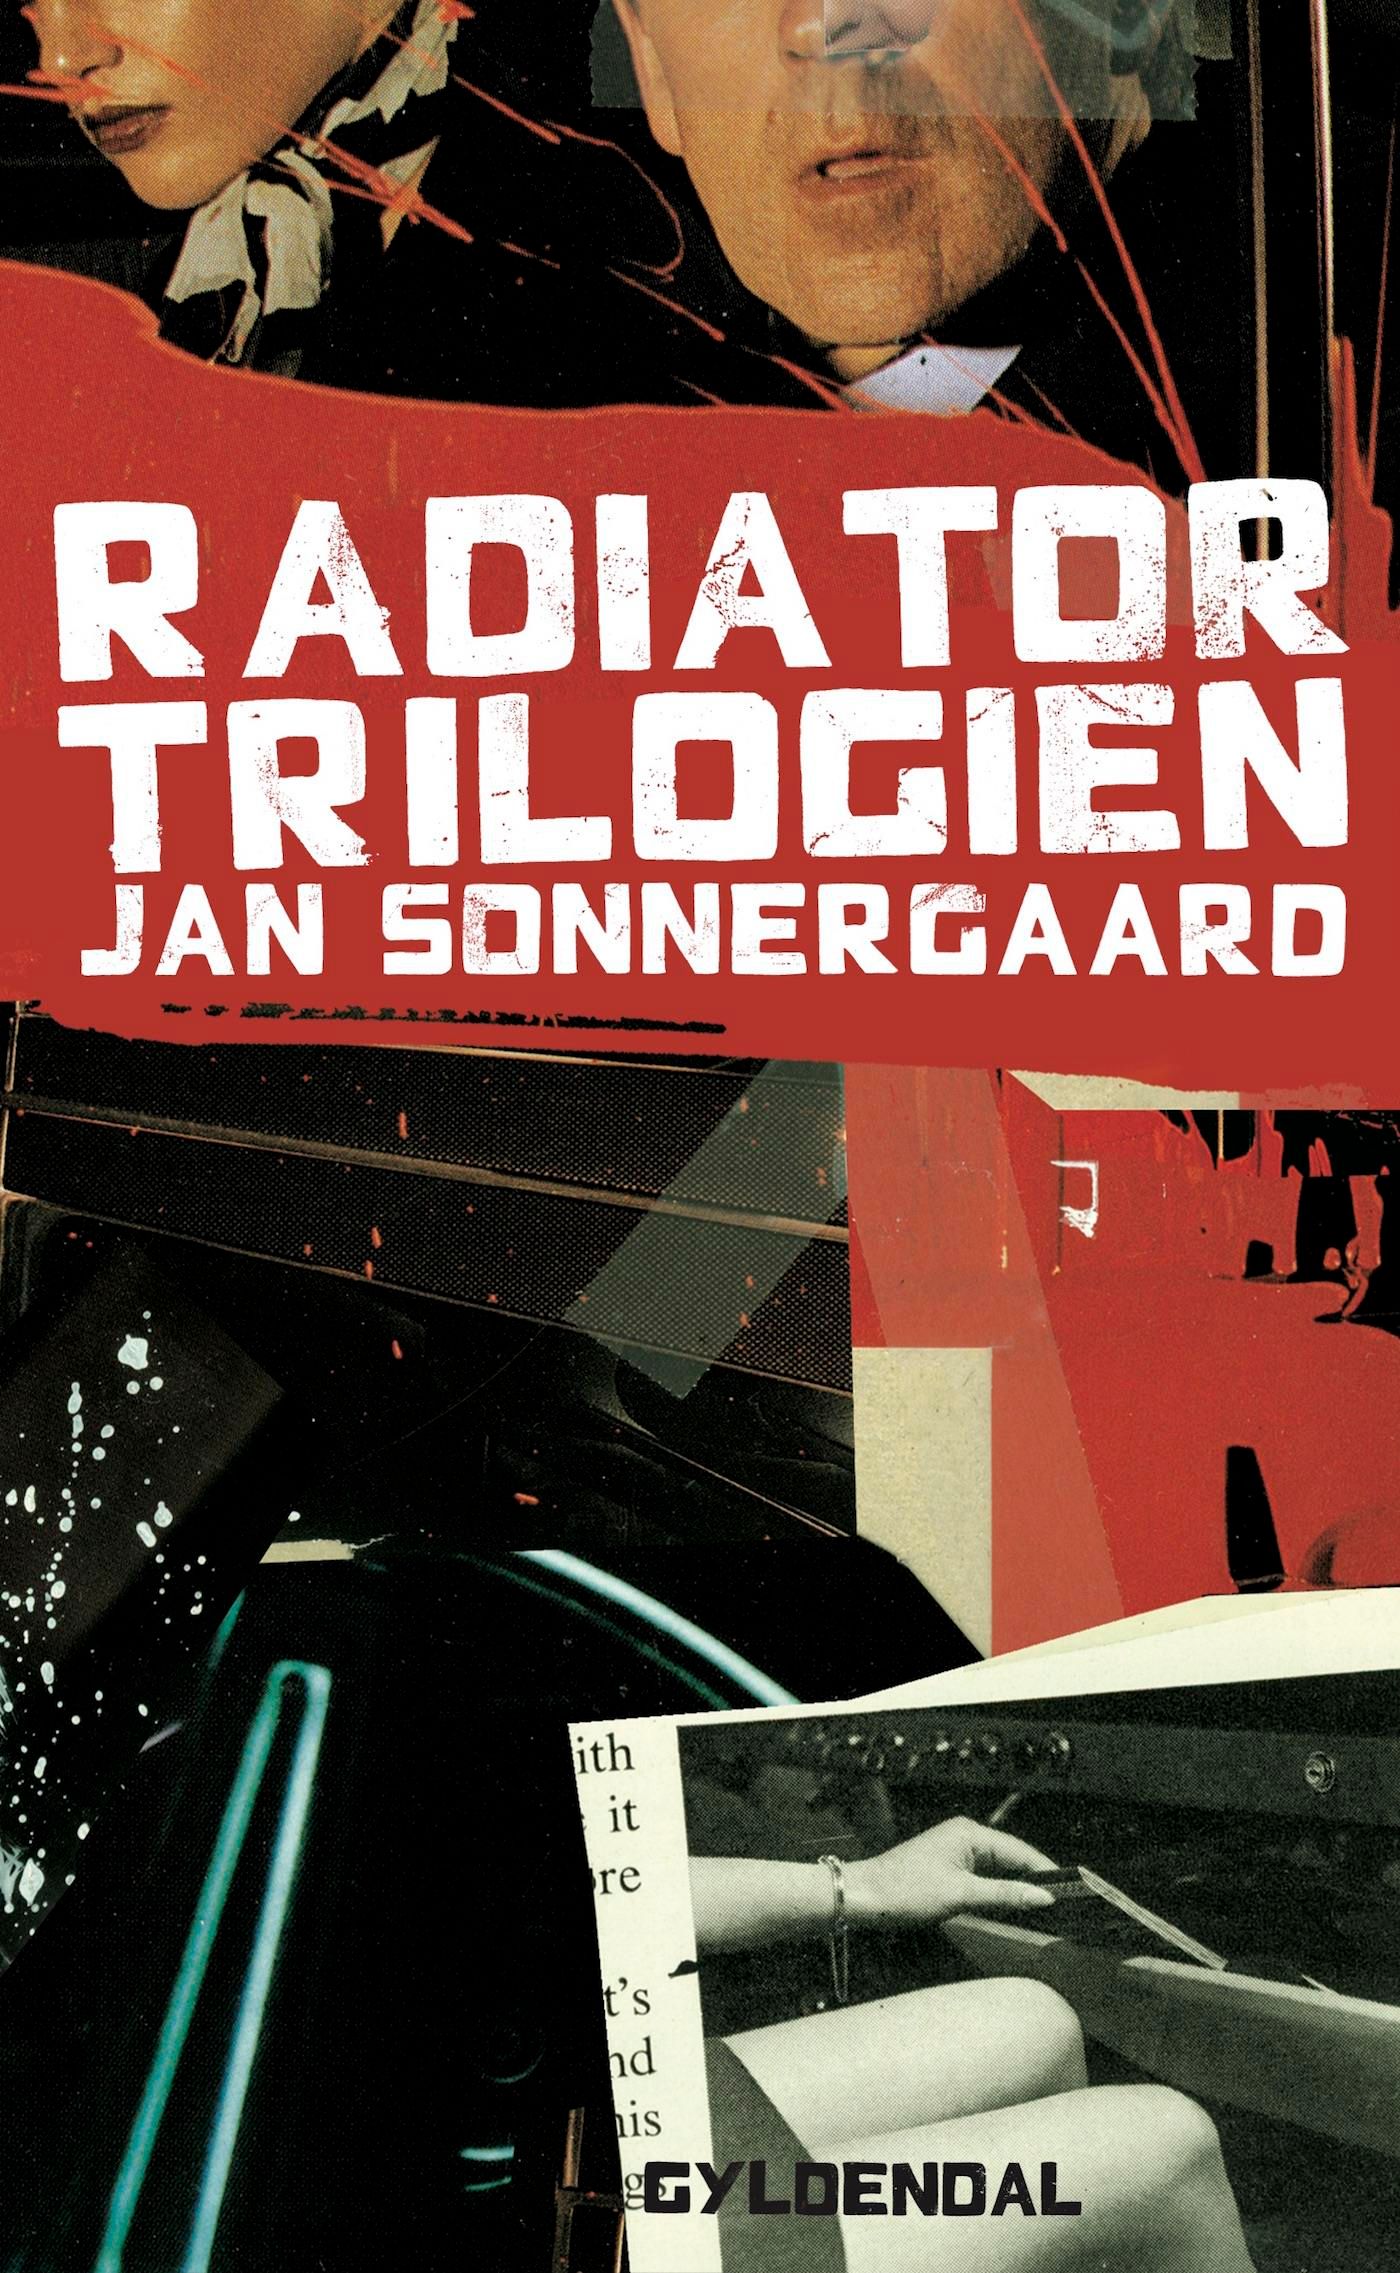 Radiatortrilogien, e-bok av Jan Sonnergaard